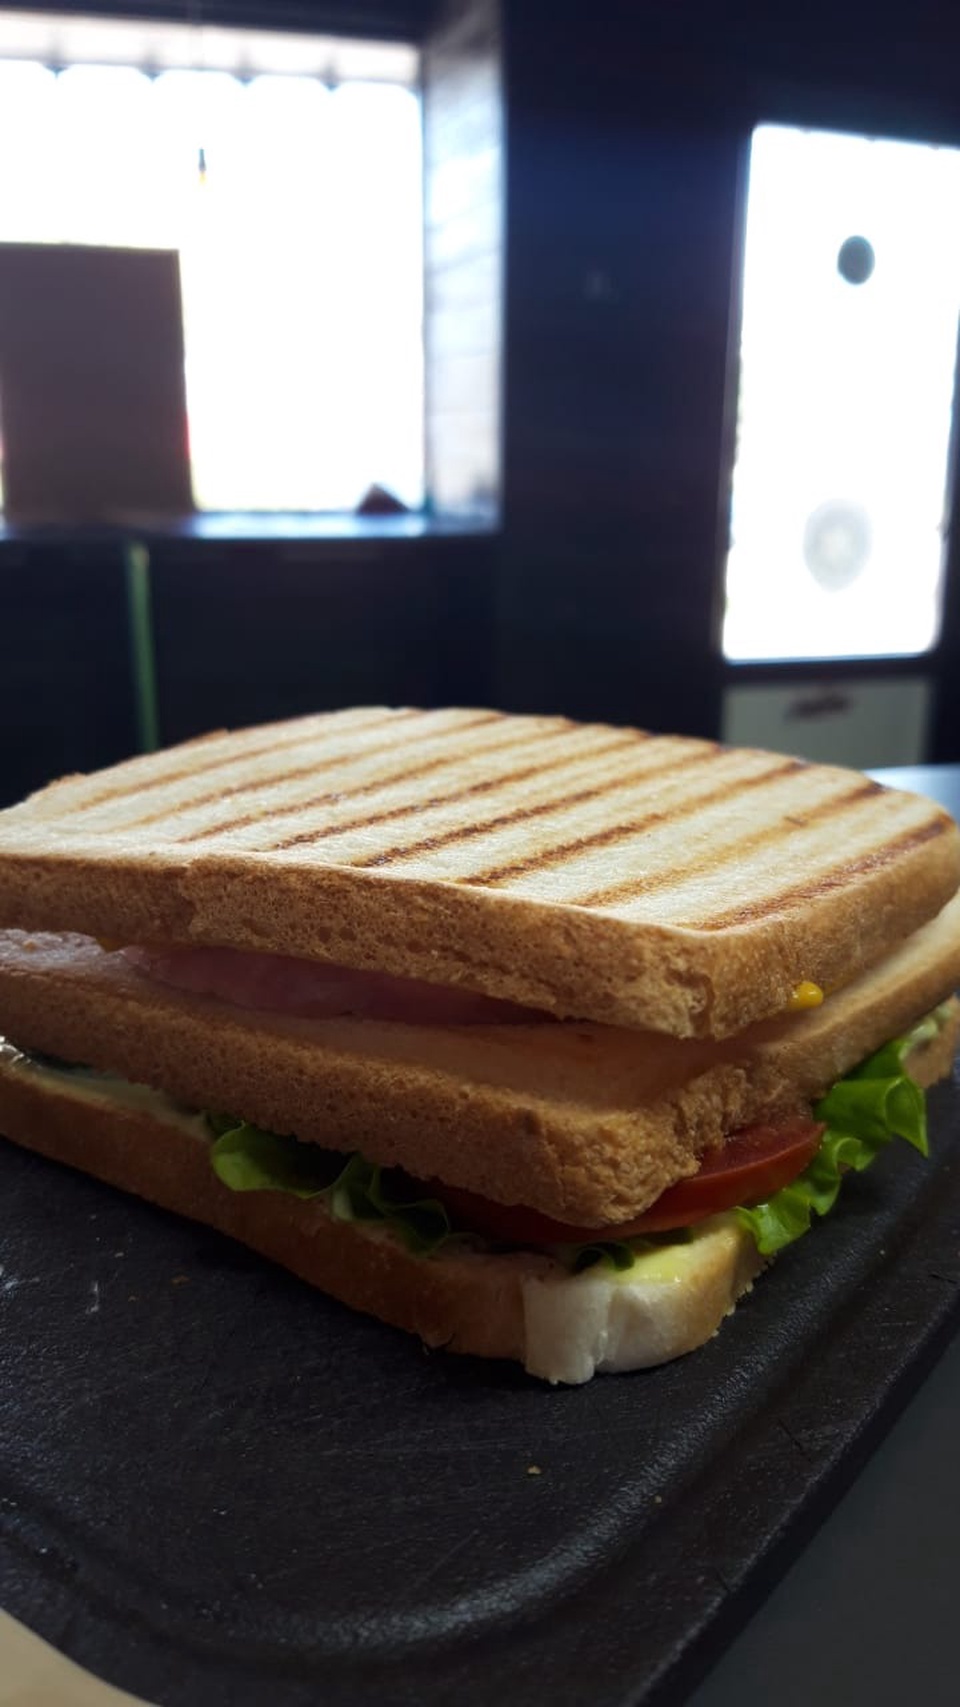 Сэндвич - 150 ₽, заказать онлайн.